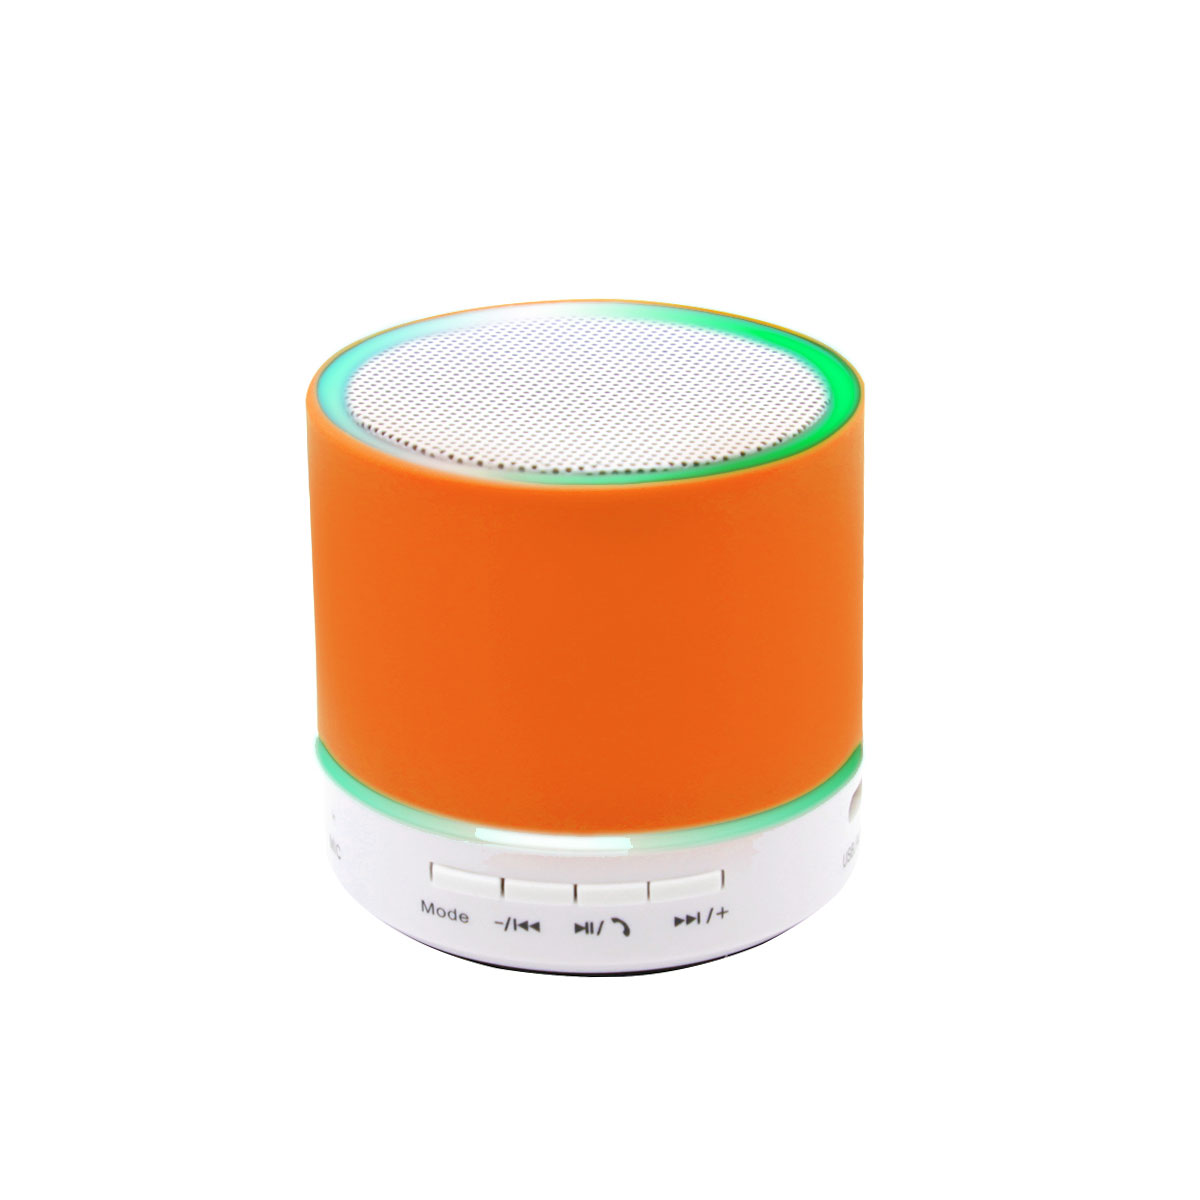 Беспроводная Bluetooth колонка Attilan (BLTS01), оранжевая (Фото)